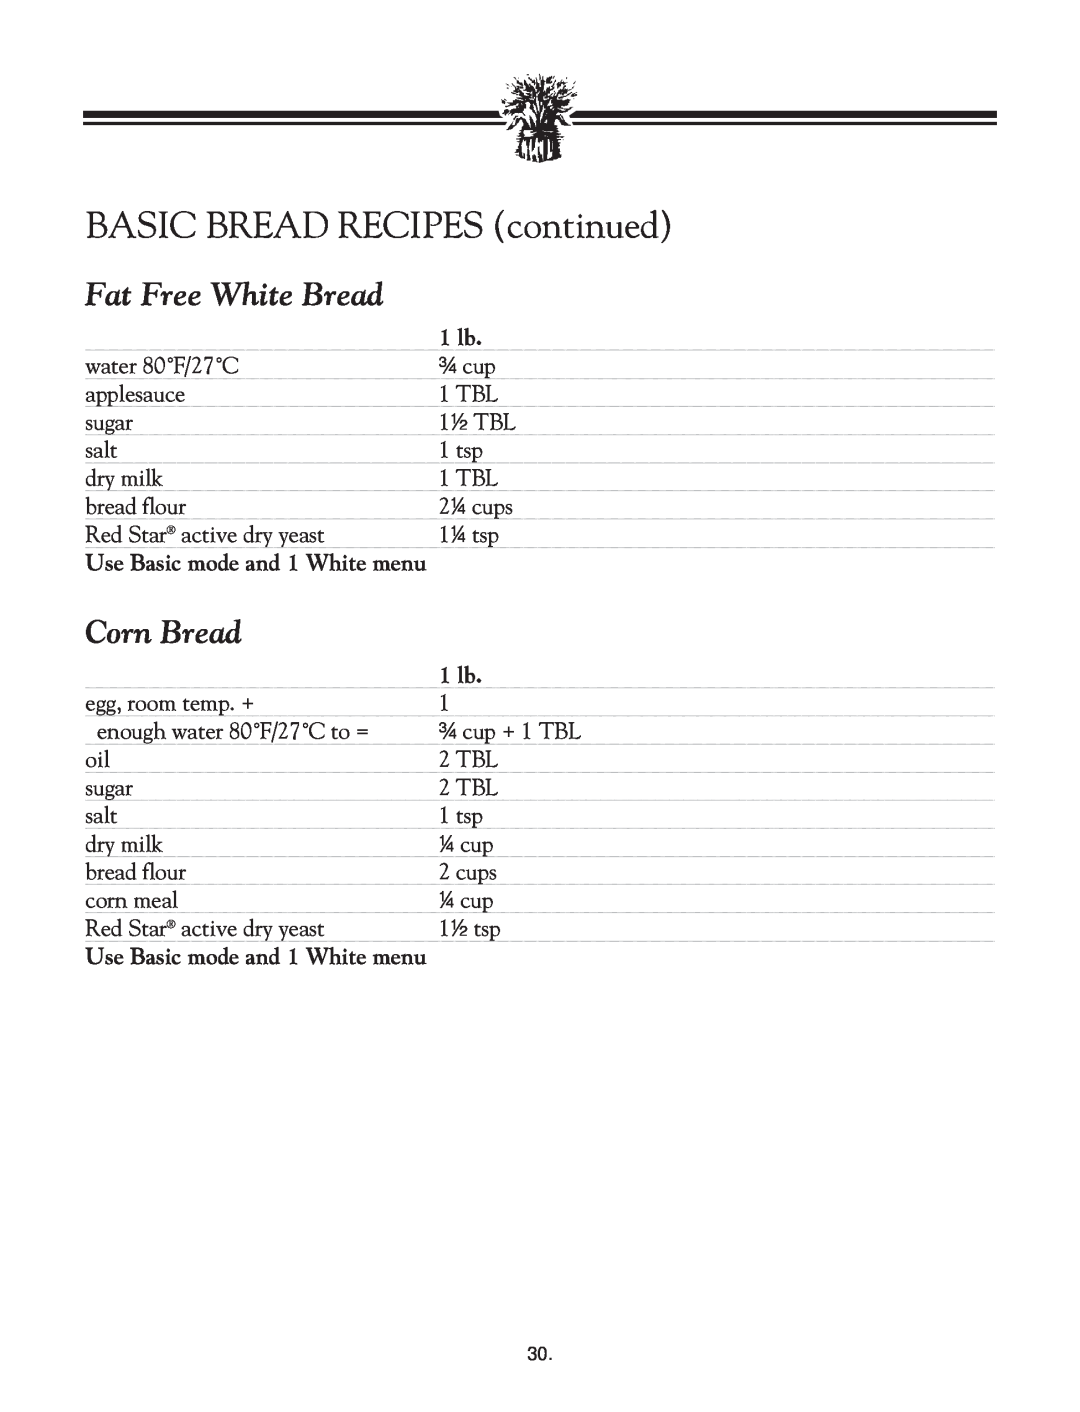 Breadman TR2828G instruction manual BASIC BREAD RECIPES continued, Fat Free White Bread, Corn Bread 